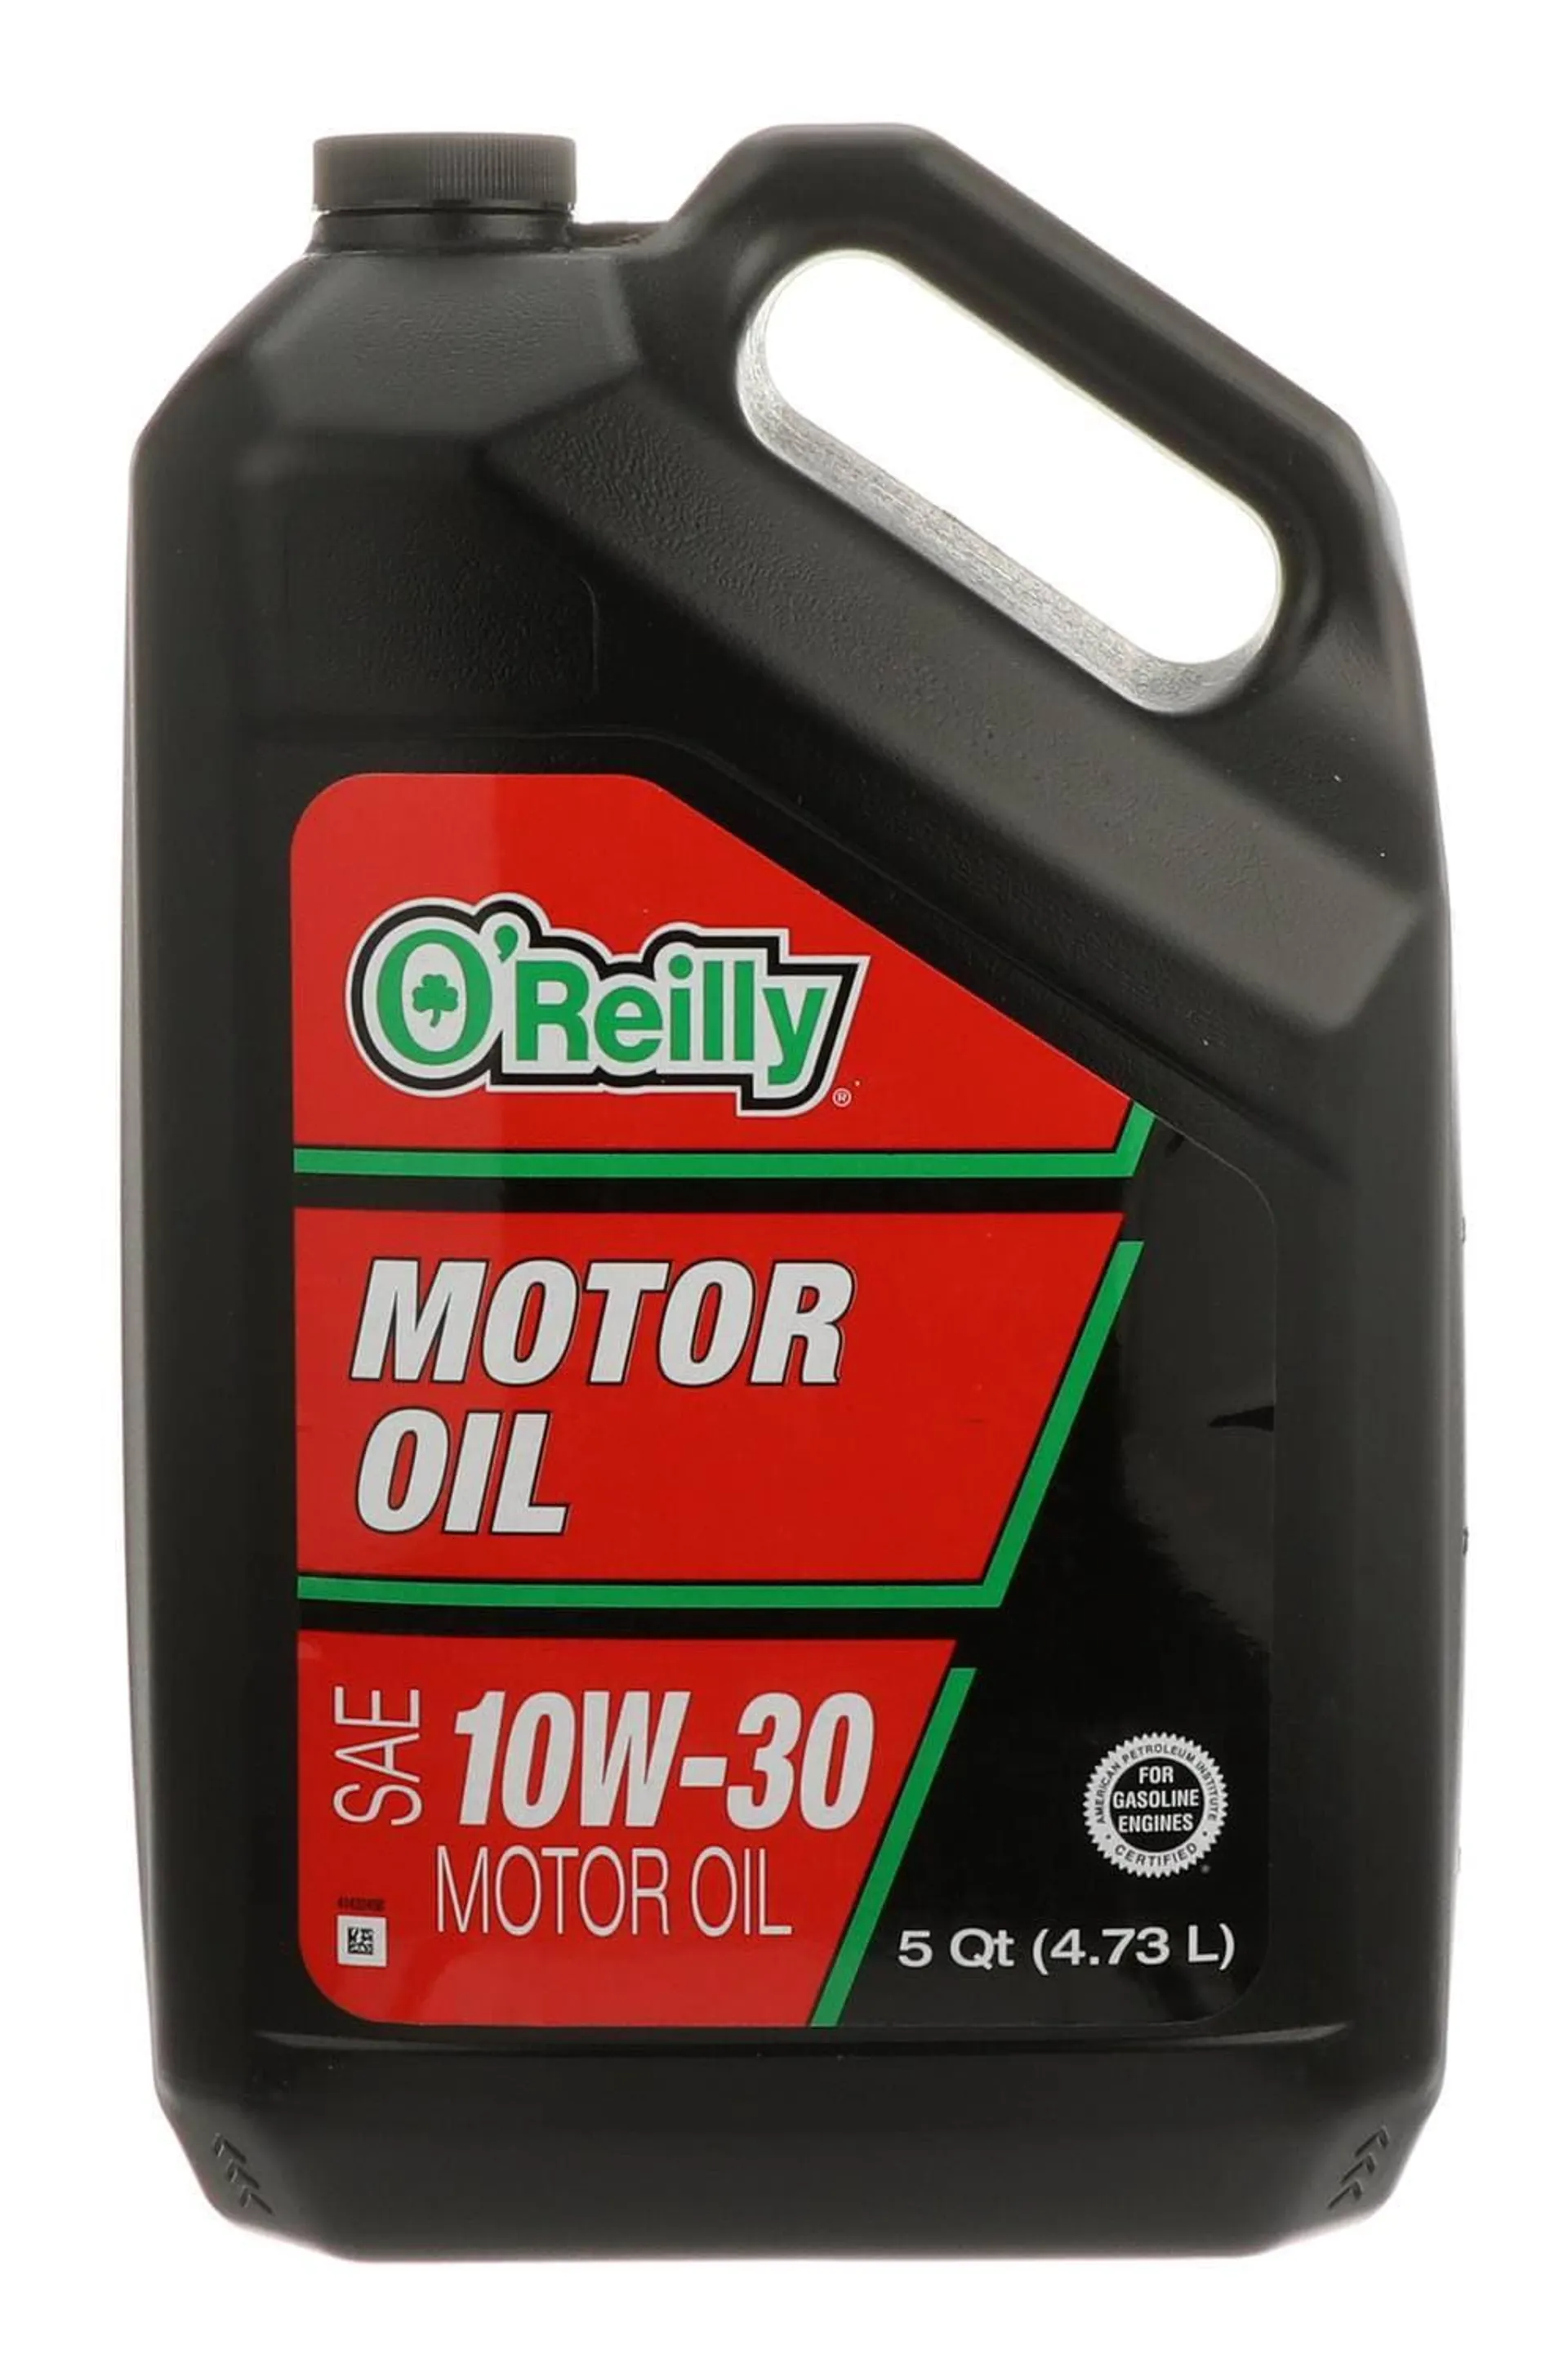 O'Reilly Conventional Motor Oil 10W-30 5 Quart - 10-30-5QT